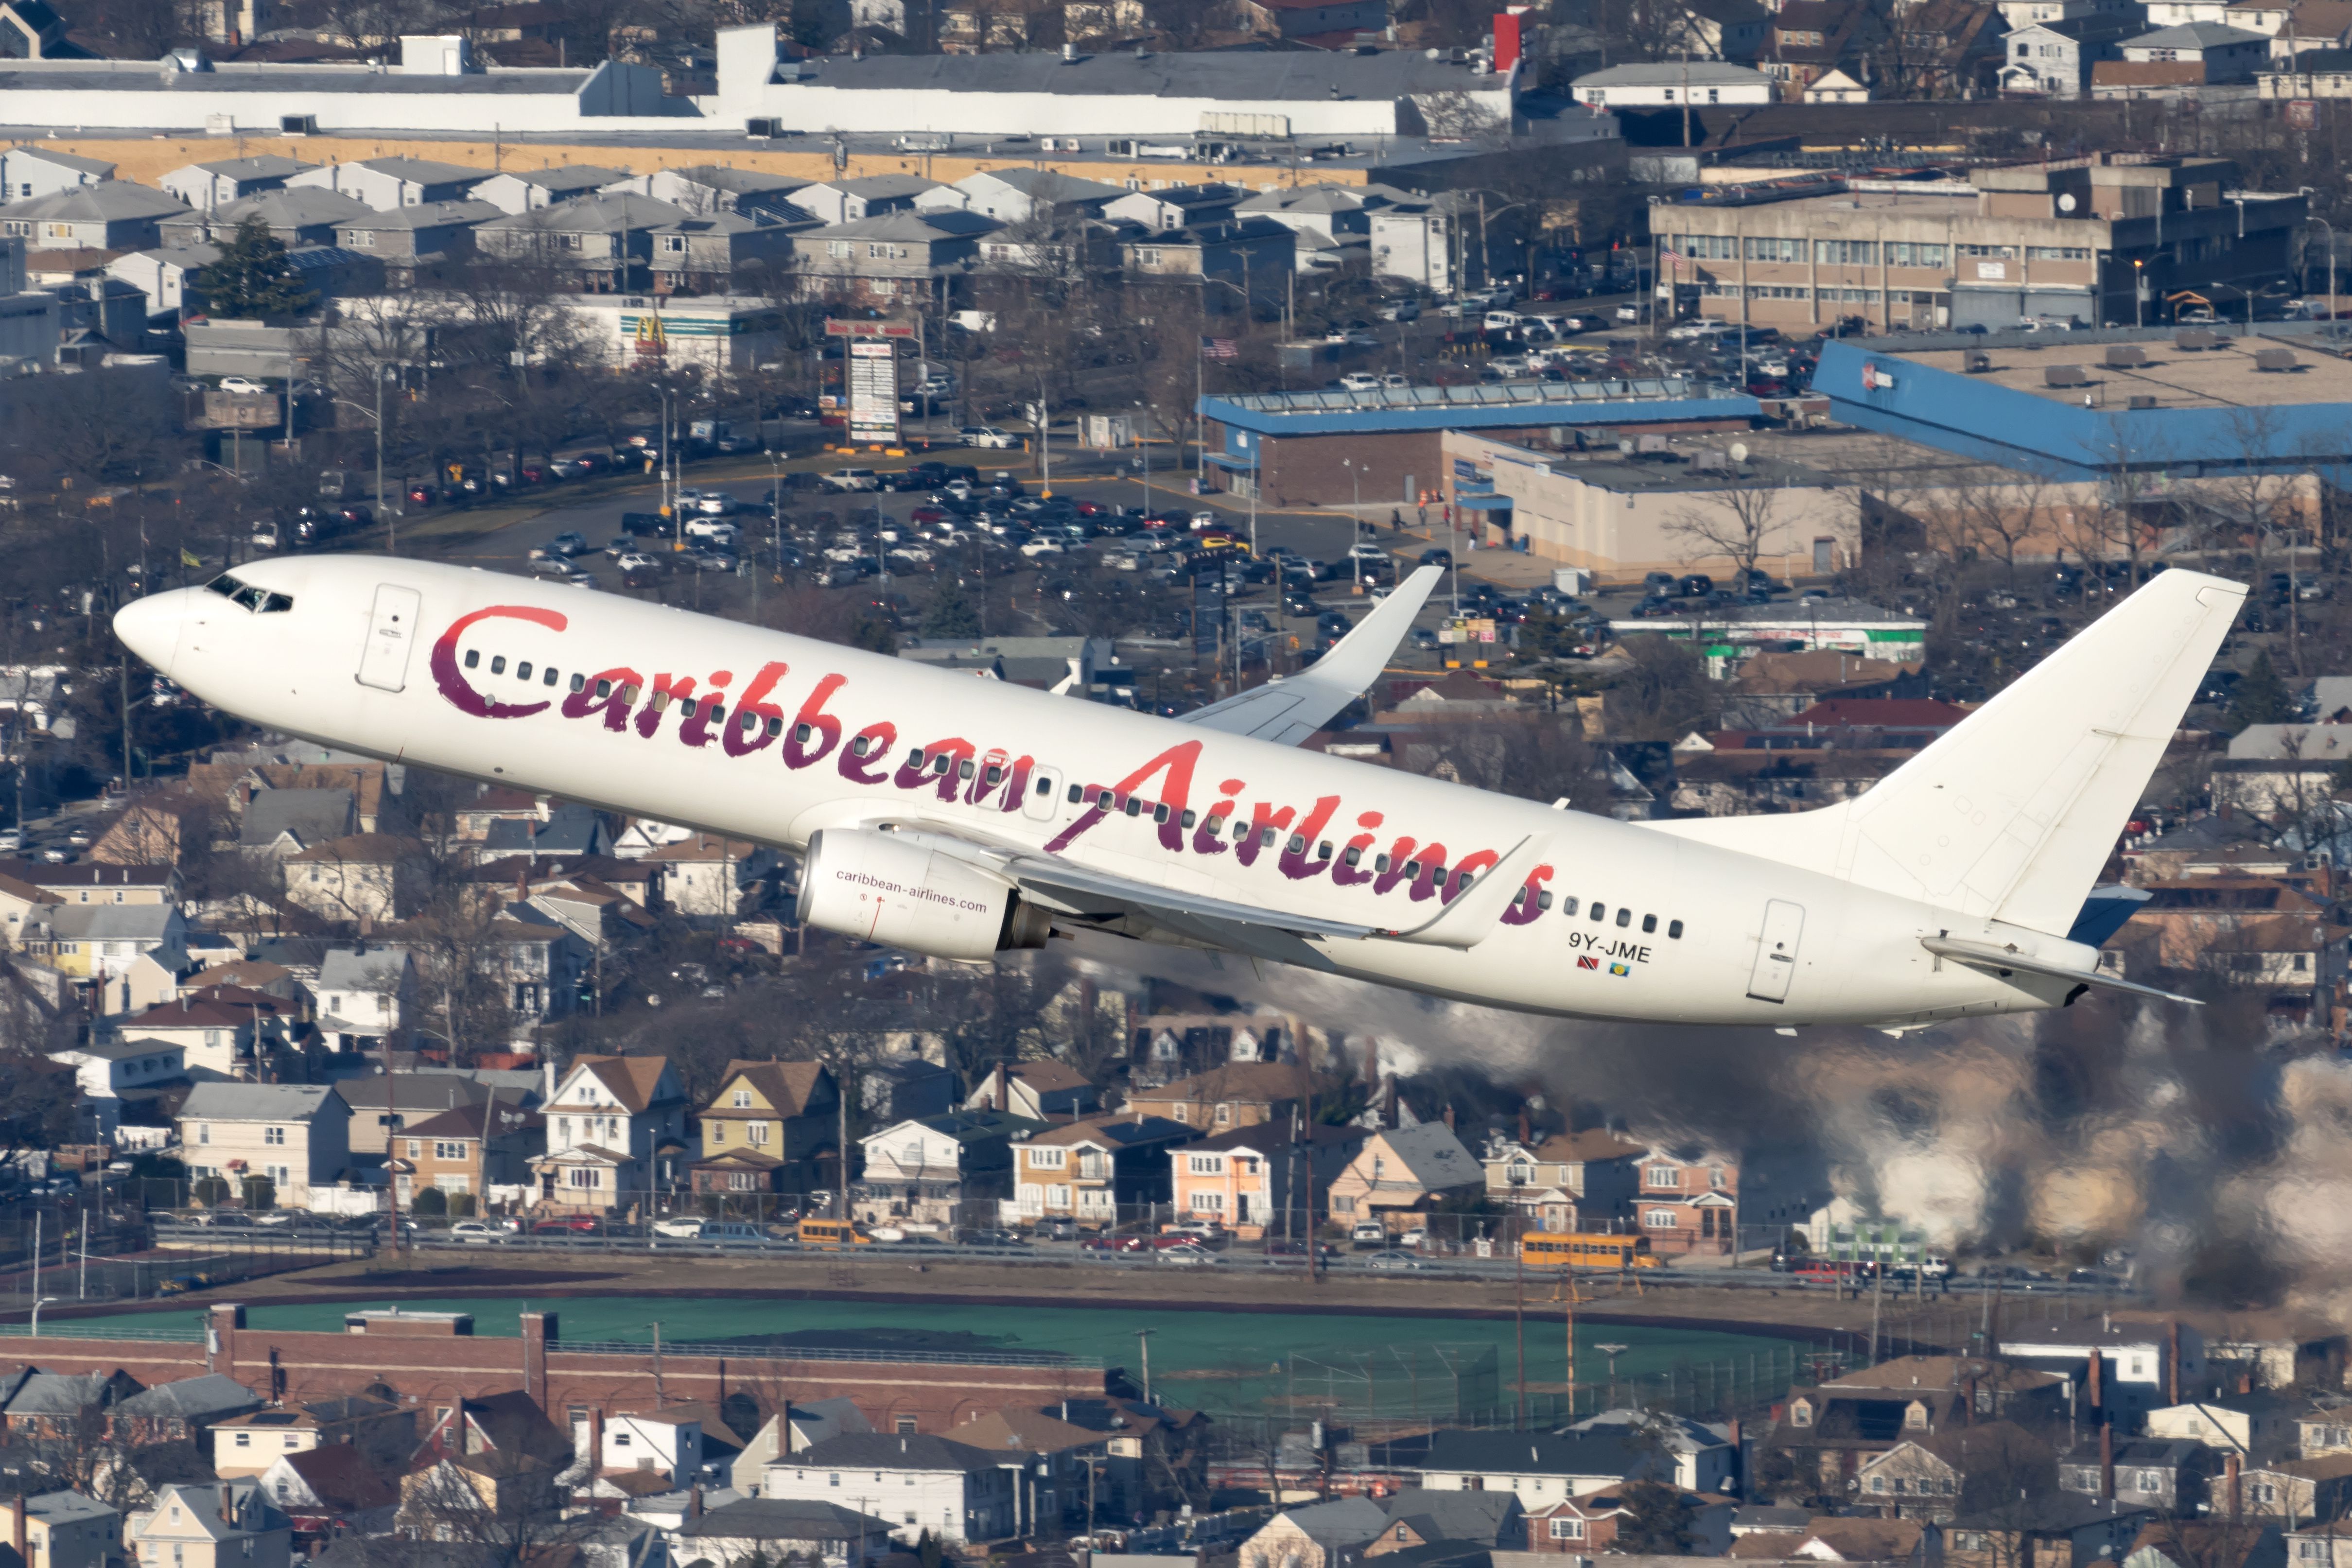 Caribbean Airlines Boeing 737-86J 9Y-JME.